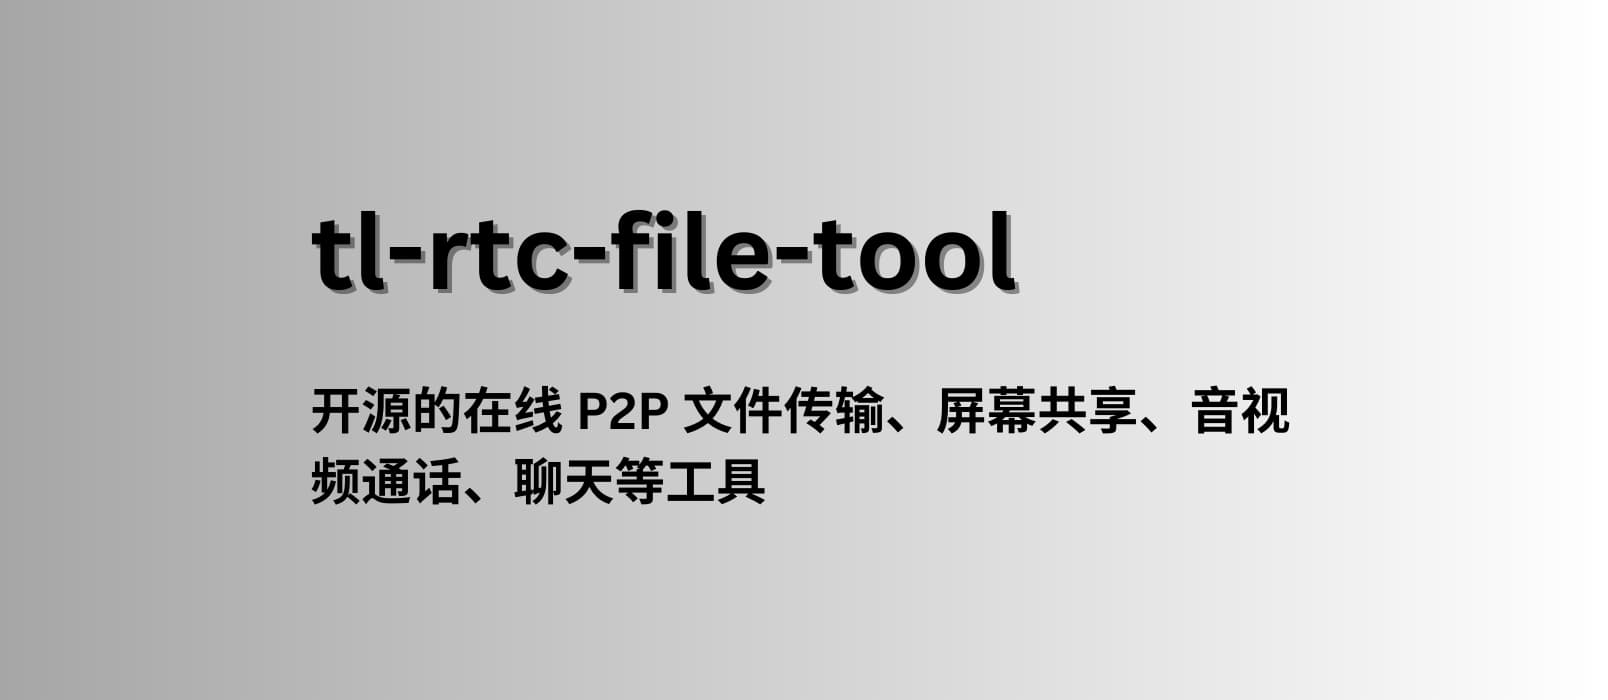 tl-rtc-file-tool - 一款开源的在线 P2P 文件传输、屏幕共享、音视频通话等工具 